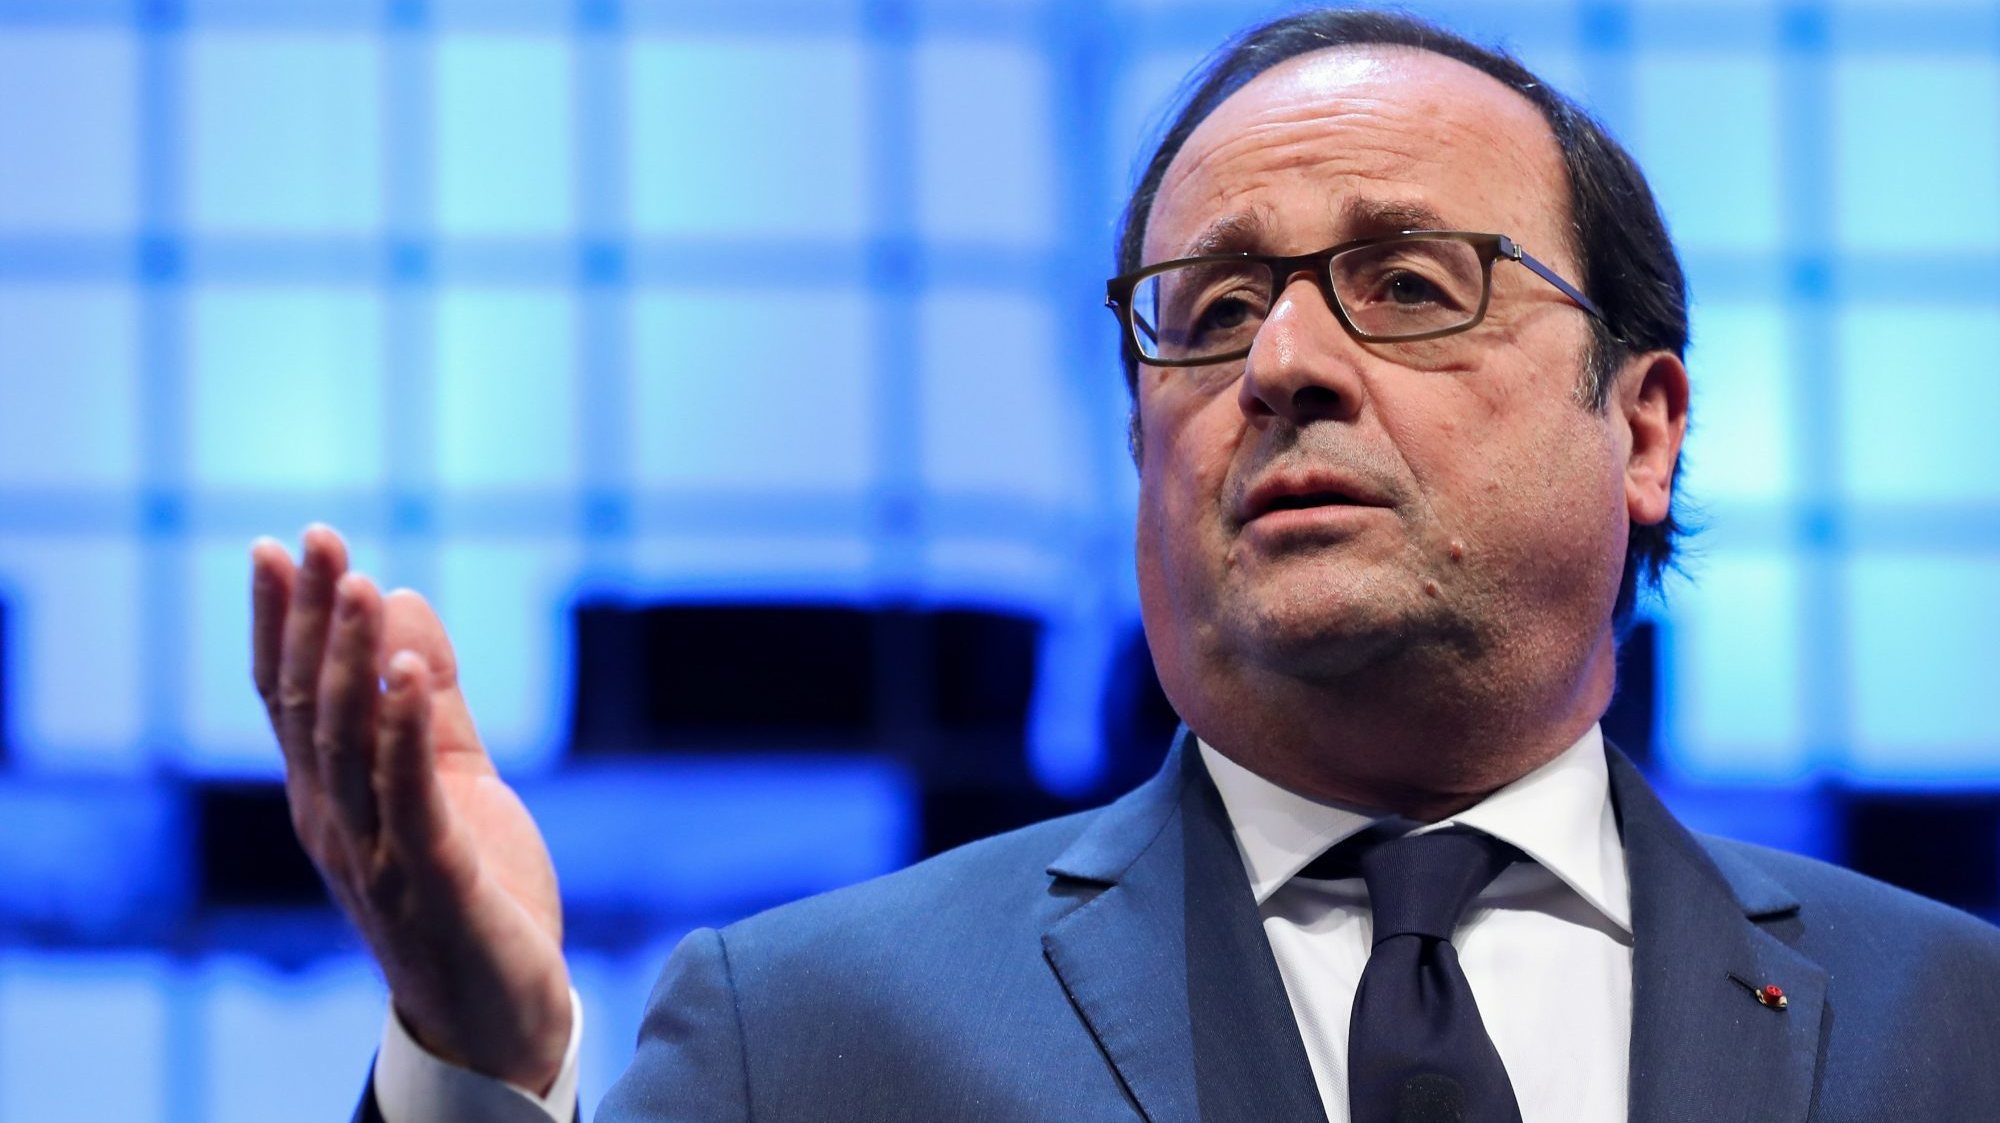 Ao Le Parisien, Hollande defendeu que a solução política em França virá de um movimento de esquerda e que quem o liderar deverá devolver a esperança